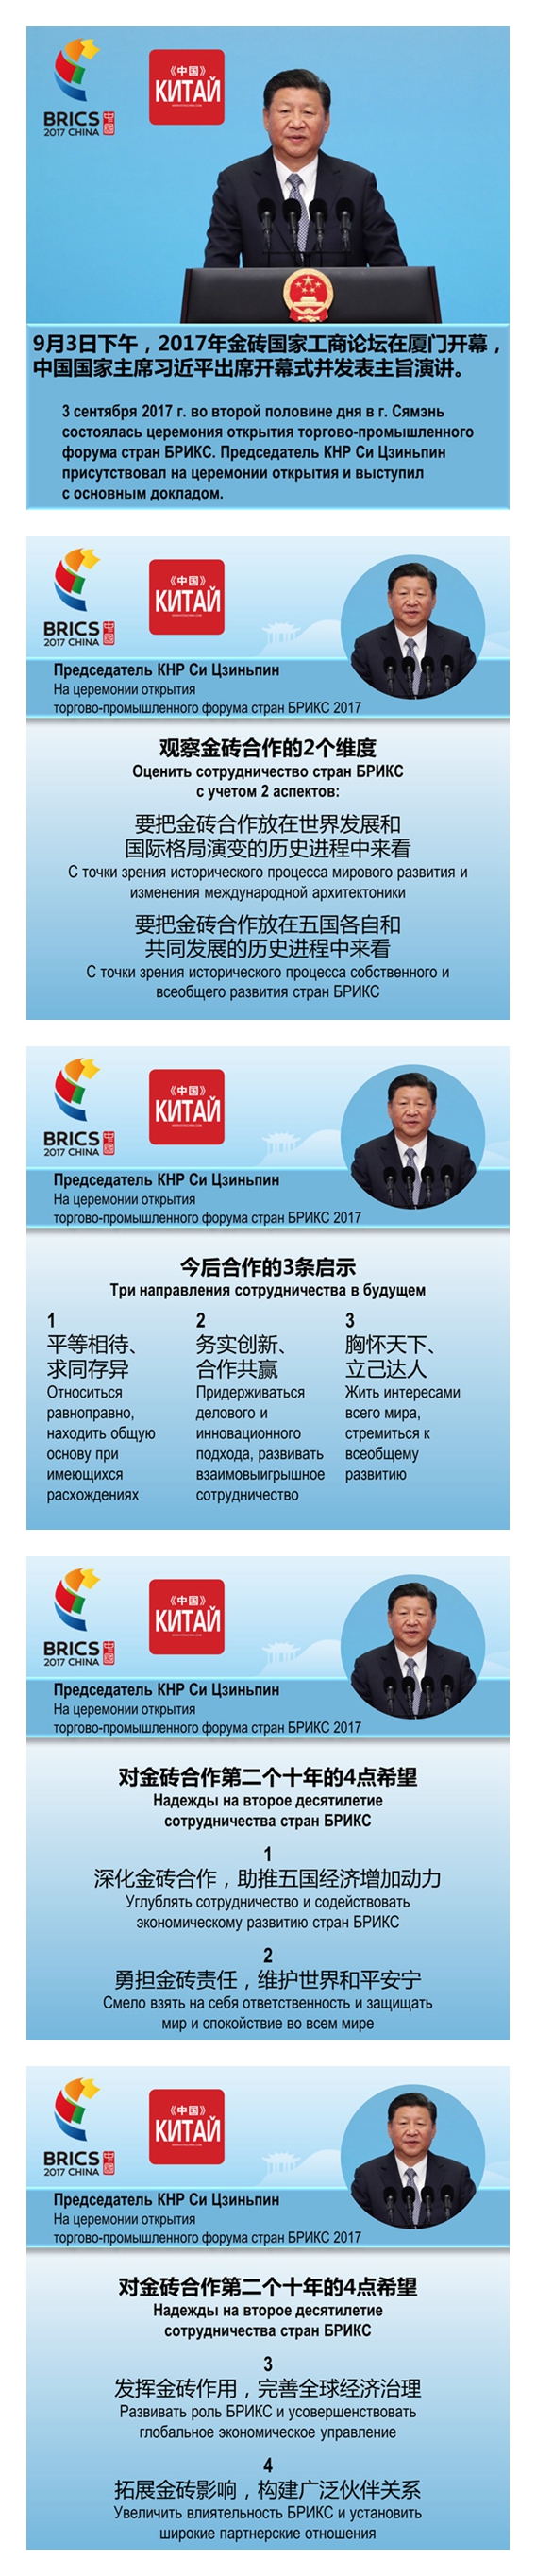 Си Цзиньпин поприветствовал участников бизнес-форума БРИКС